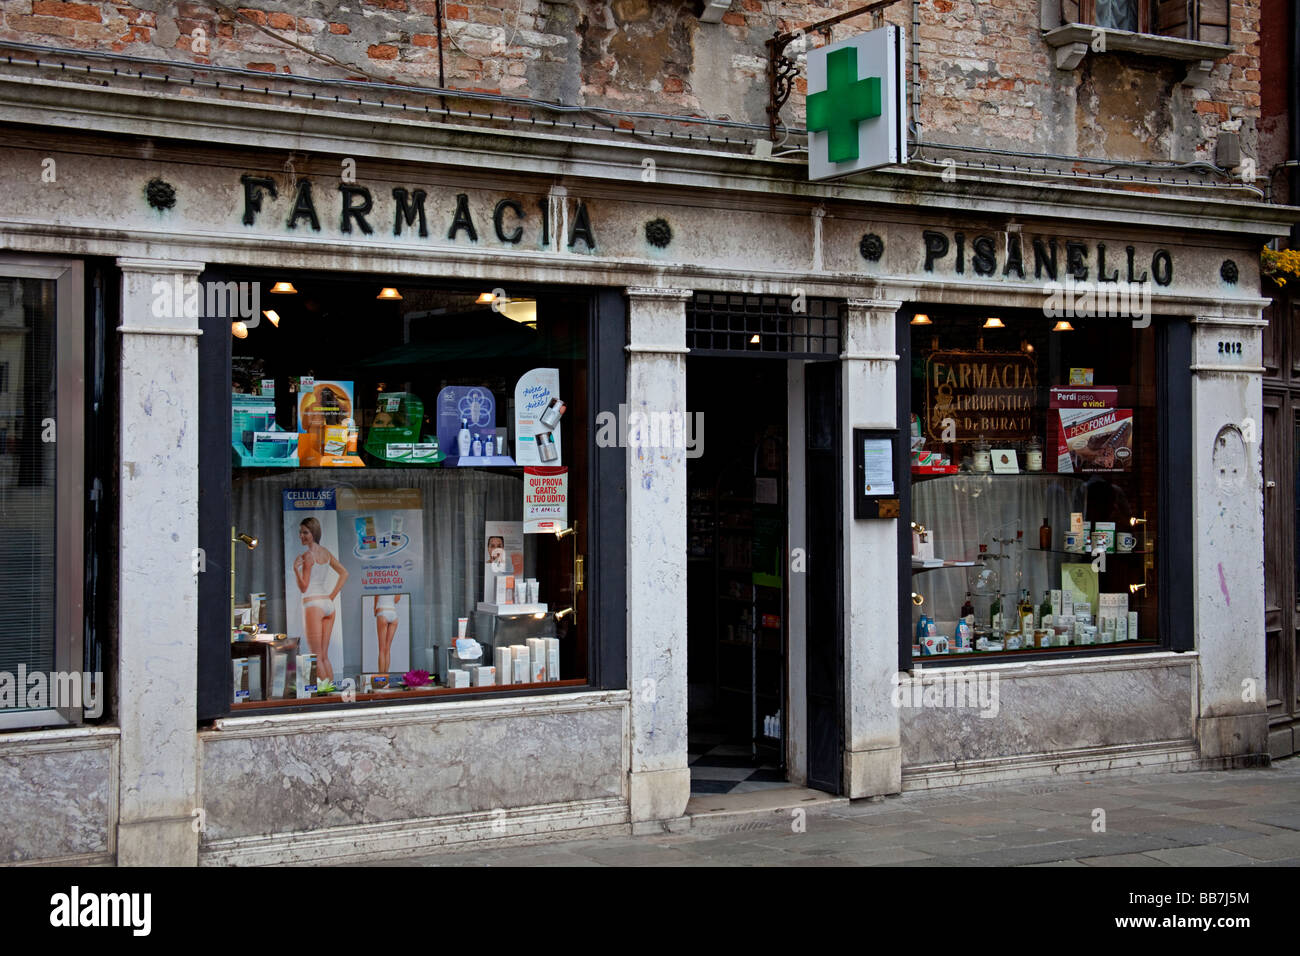 In vecchio stile rustico cercando farmacia farmacia, Venezia Italia Foto  stock - Alamy